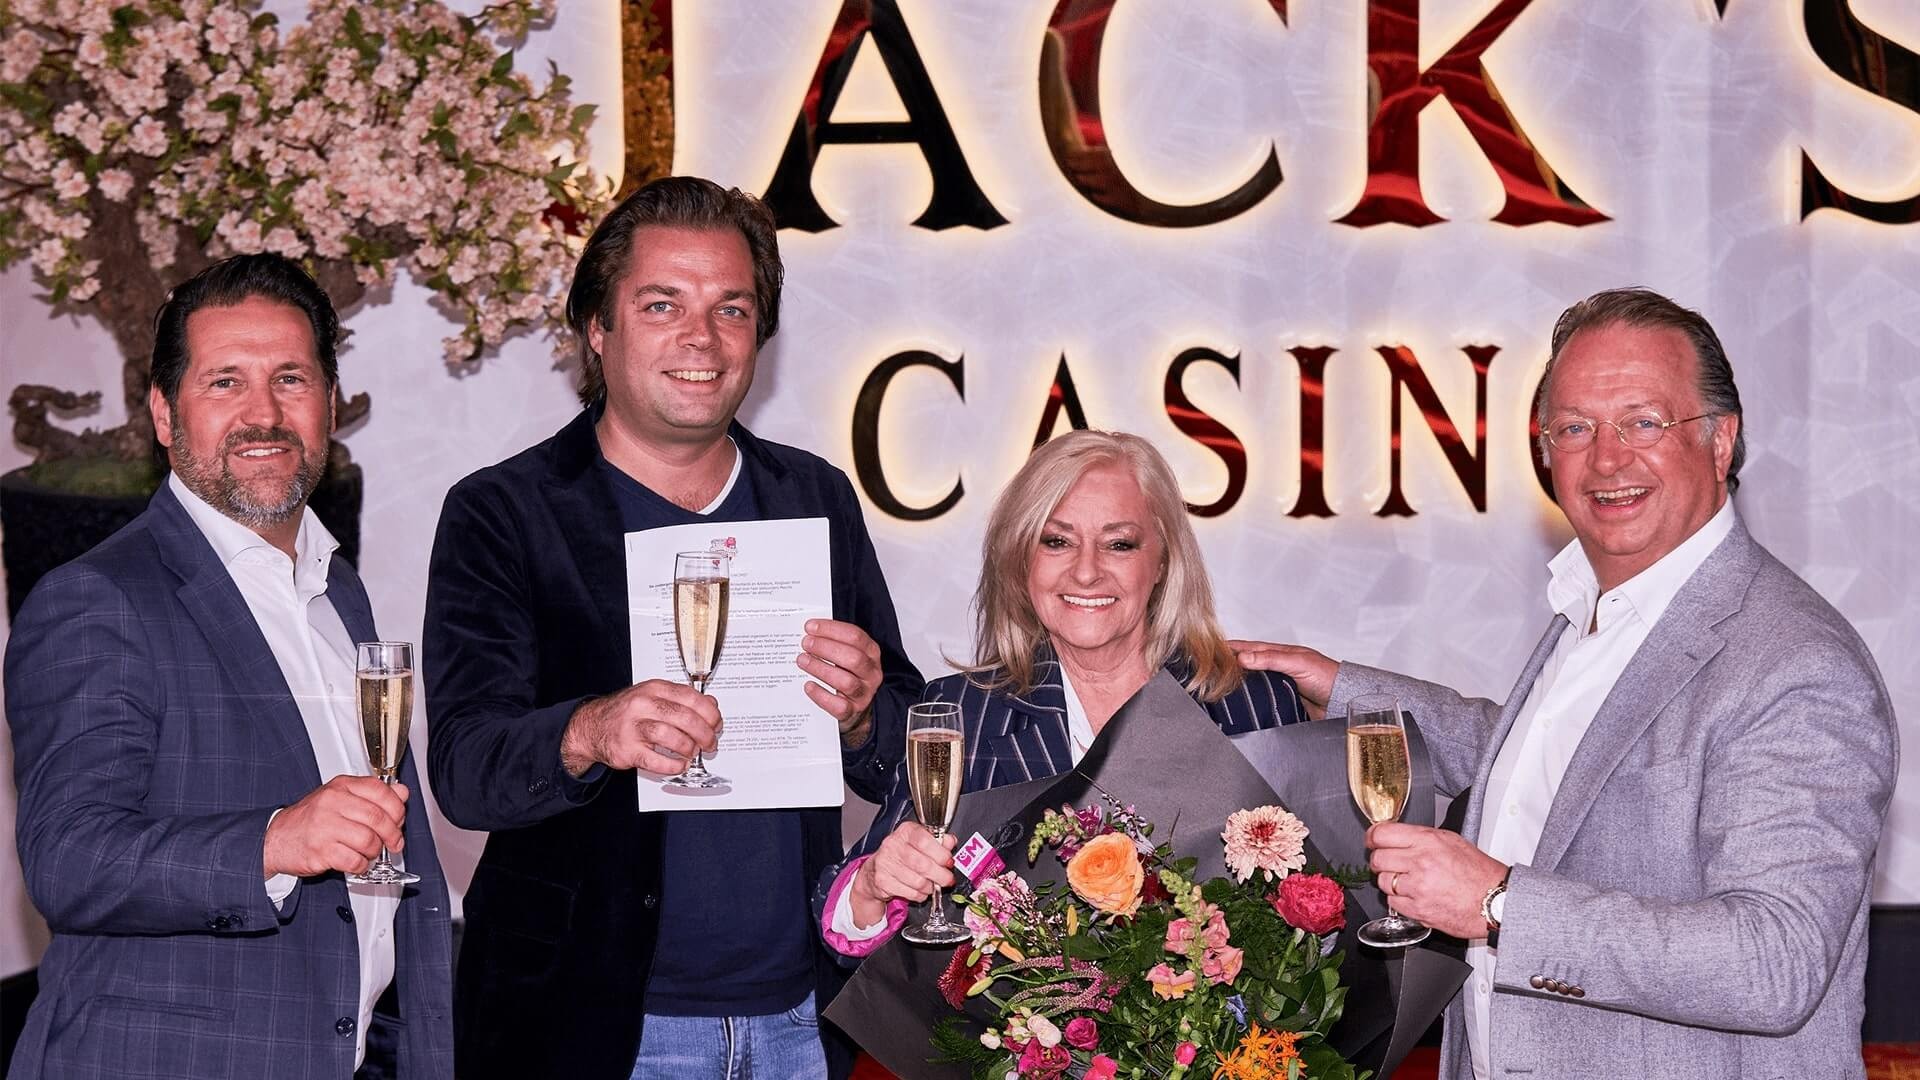 Informatie over deze training: Jack's Casino hoofdsponsor Festival van het Levenslied